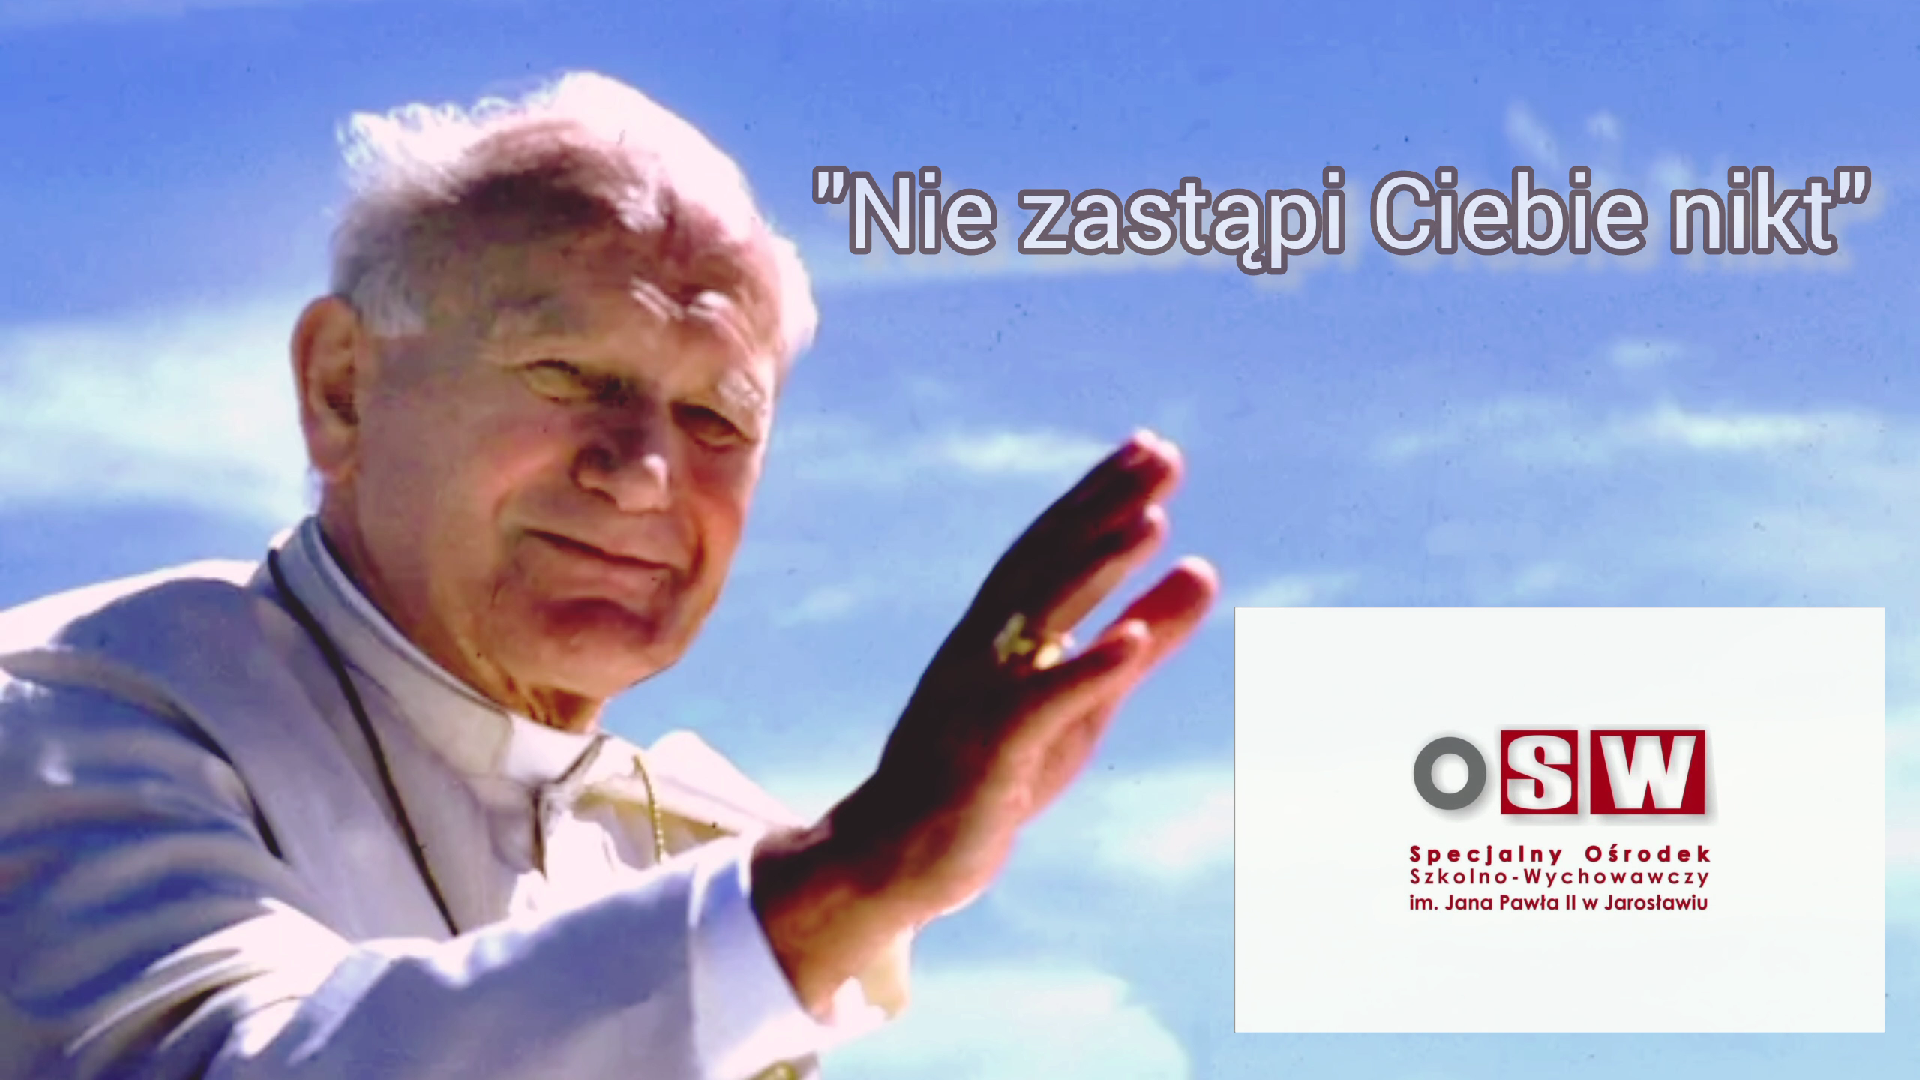 Jan Paweł II - Patron Ośrodka